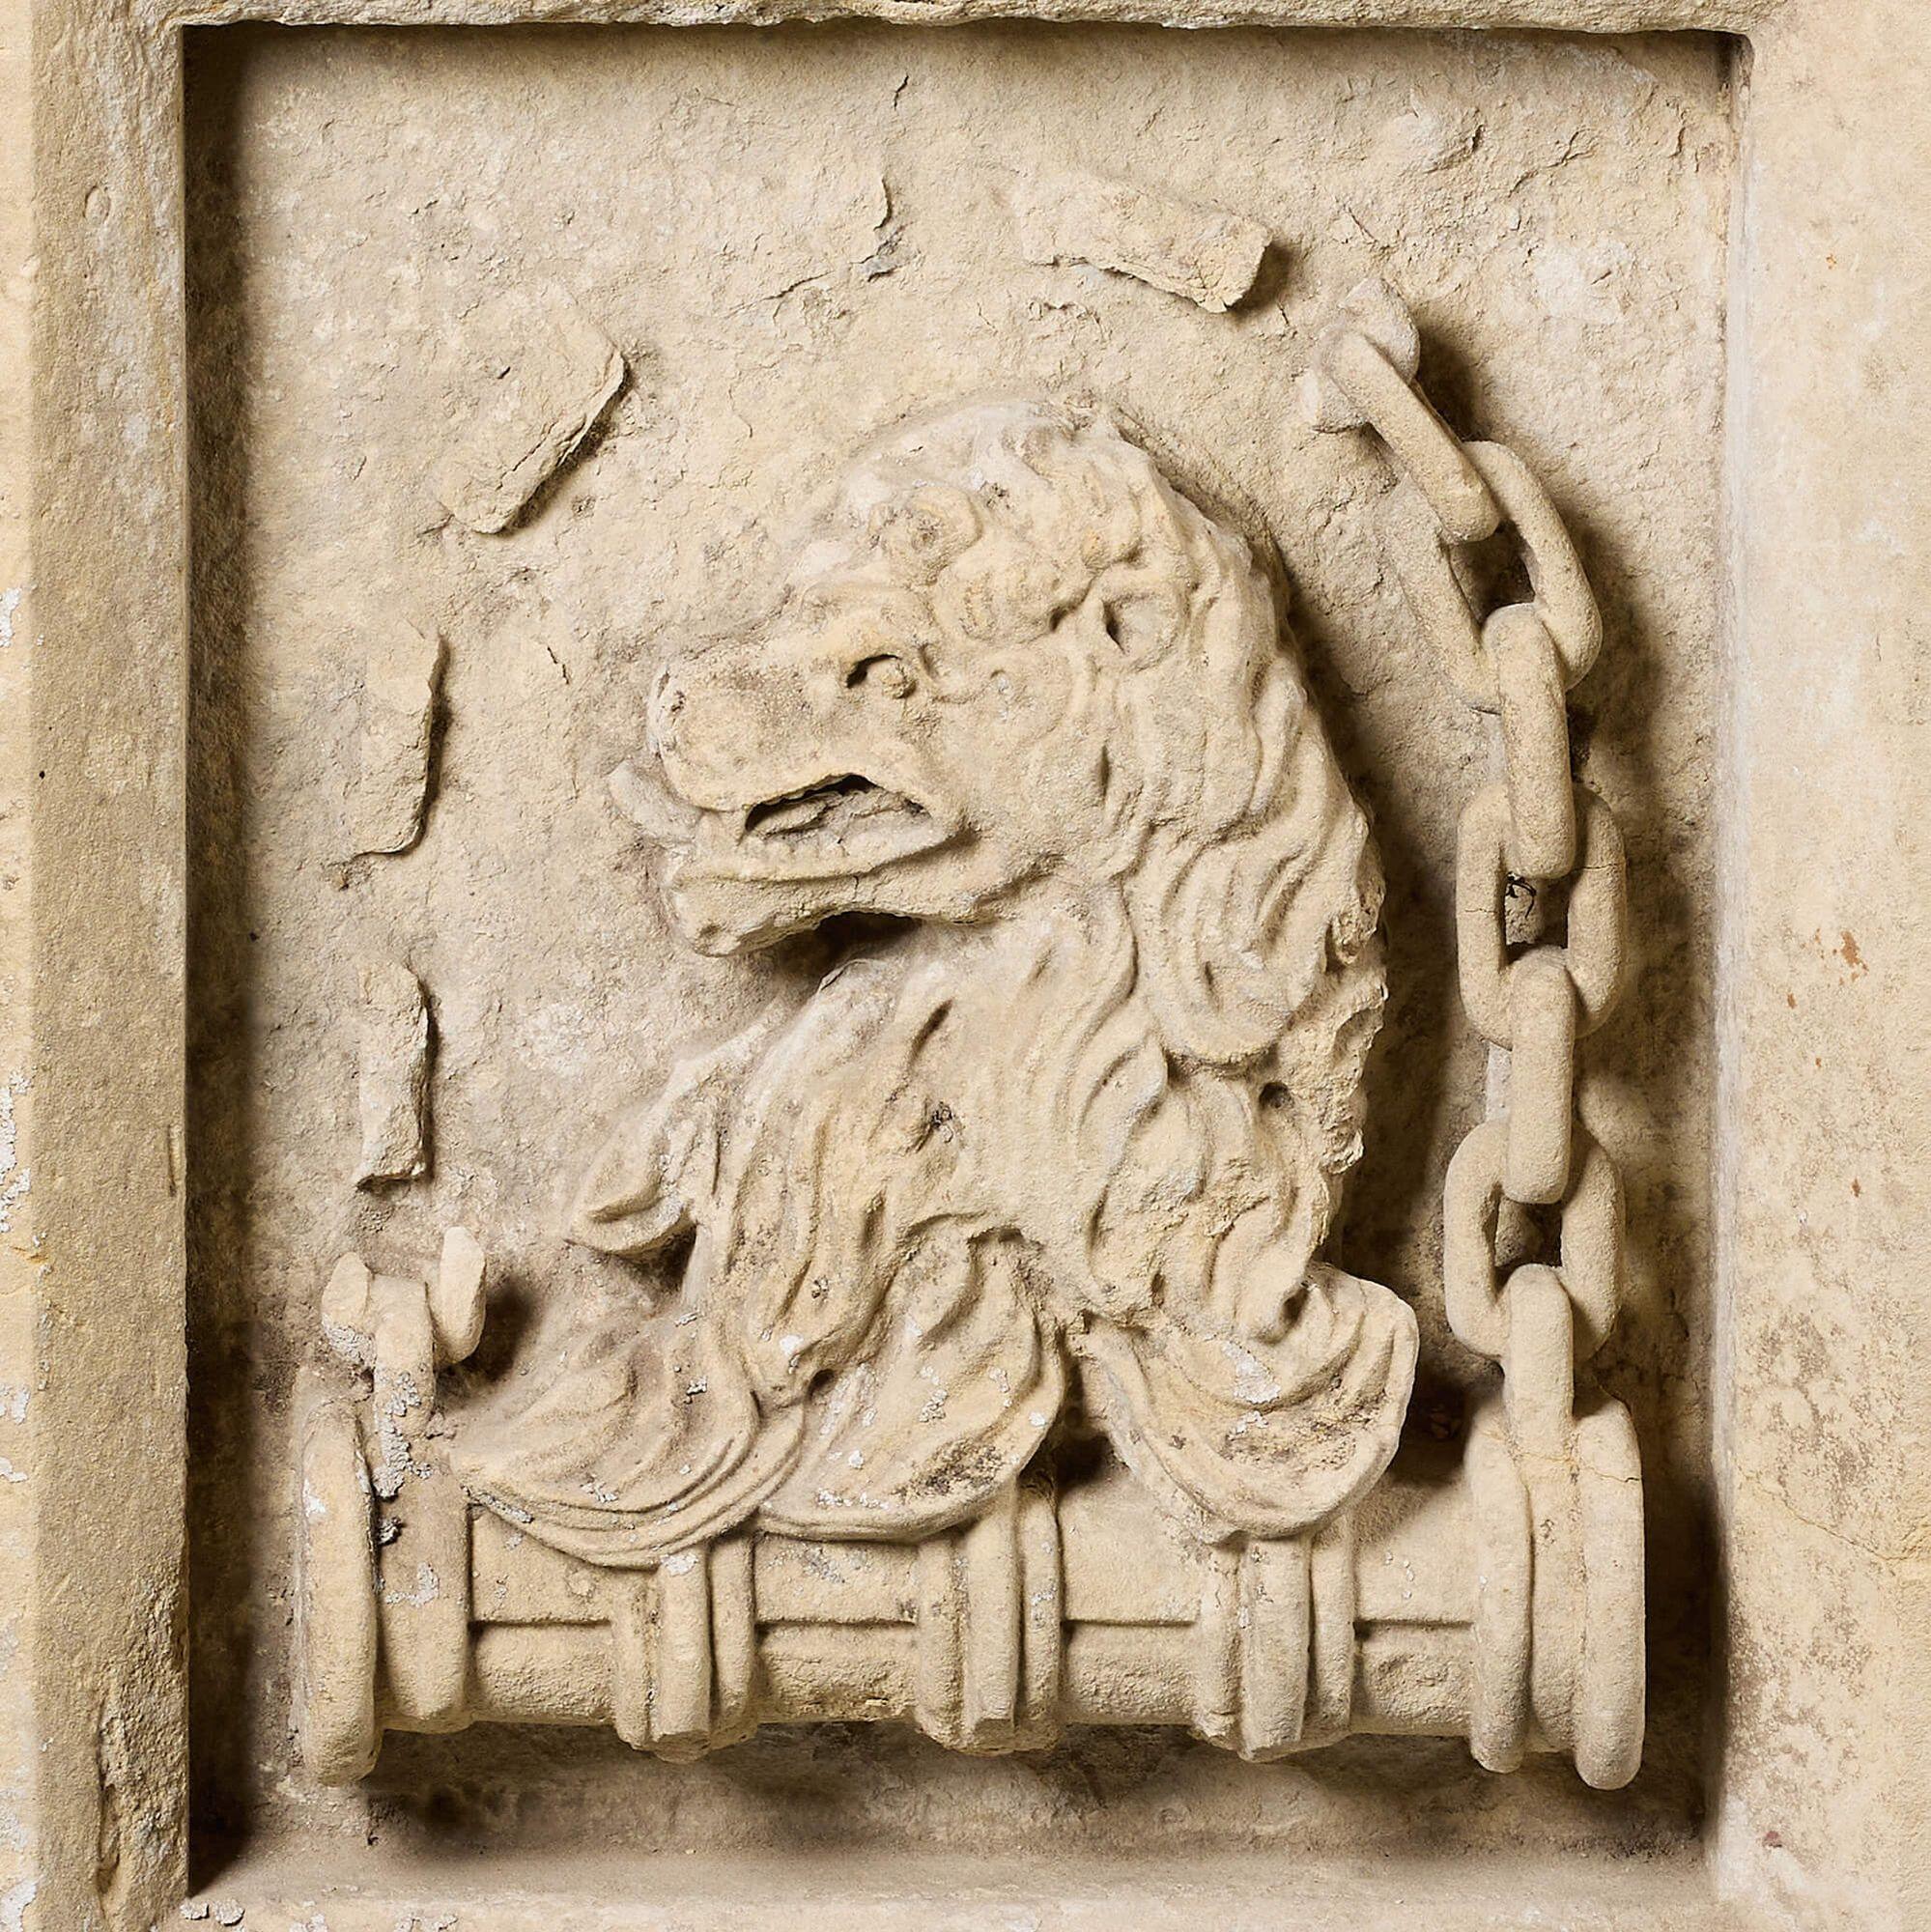 Datant des années 1850, cette plaque antique en pierre calcaire sculptée représente la tête d'un lion dans des maillons de chaîne sculptés à la main, dont certains ont été perdus à travers les âges. Elle a plus de 170 ans et faisait probablement